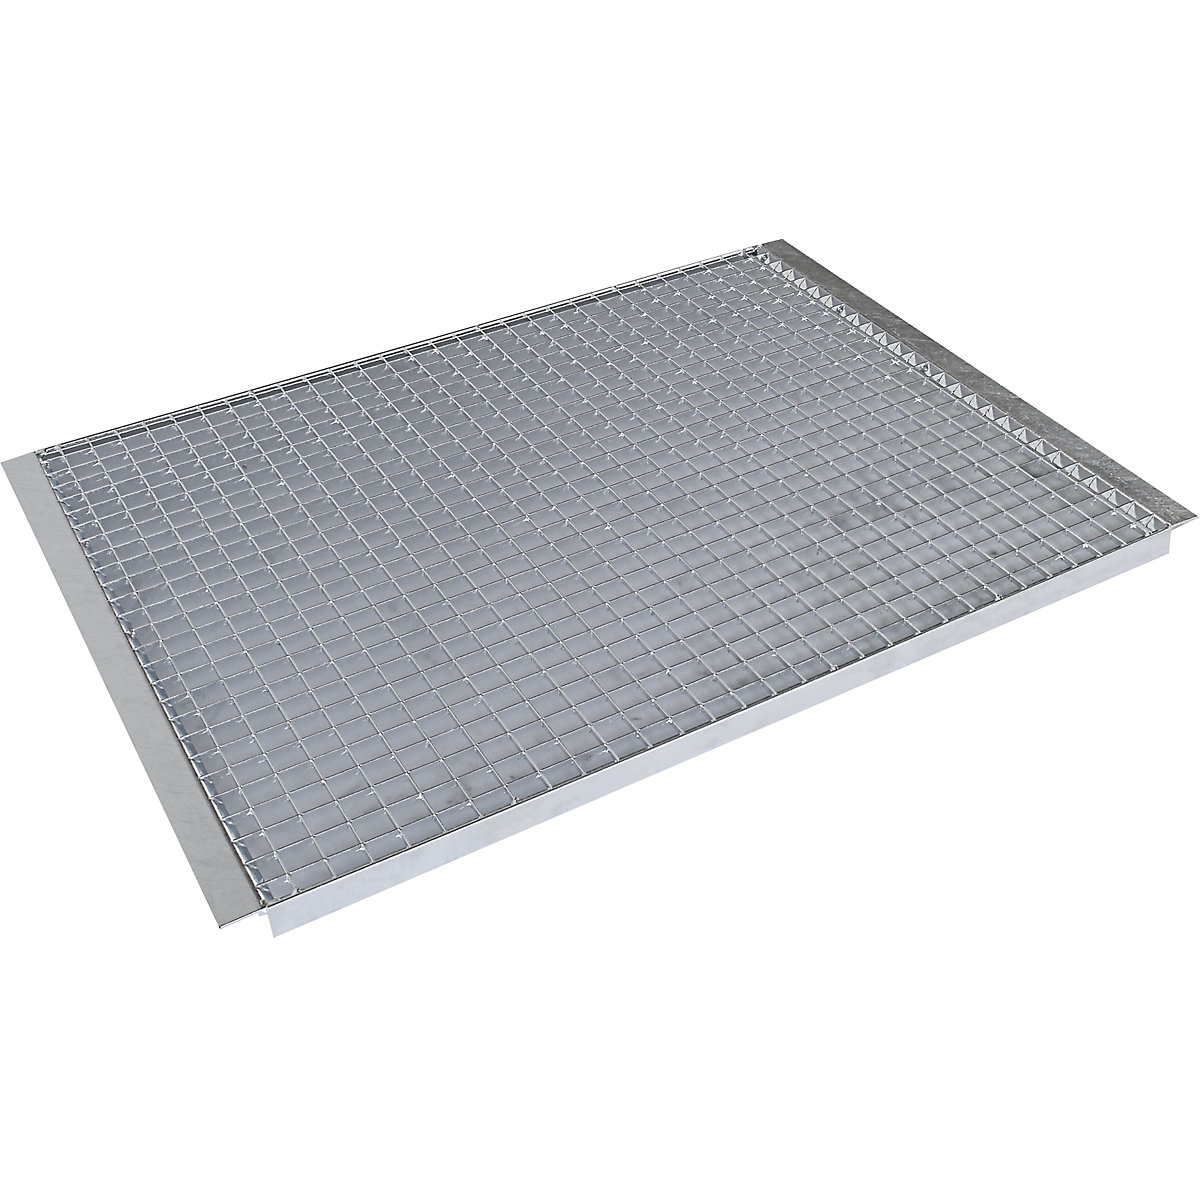 Shelf for pallet shelf unit – eurokraft pro, mesh shelf, for beam length 2700 mm, shelf unit depth 750 mm